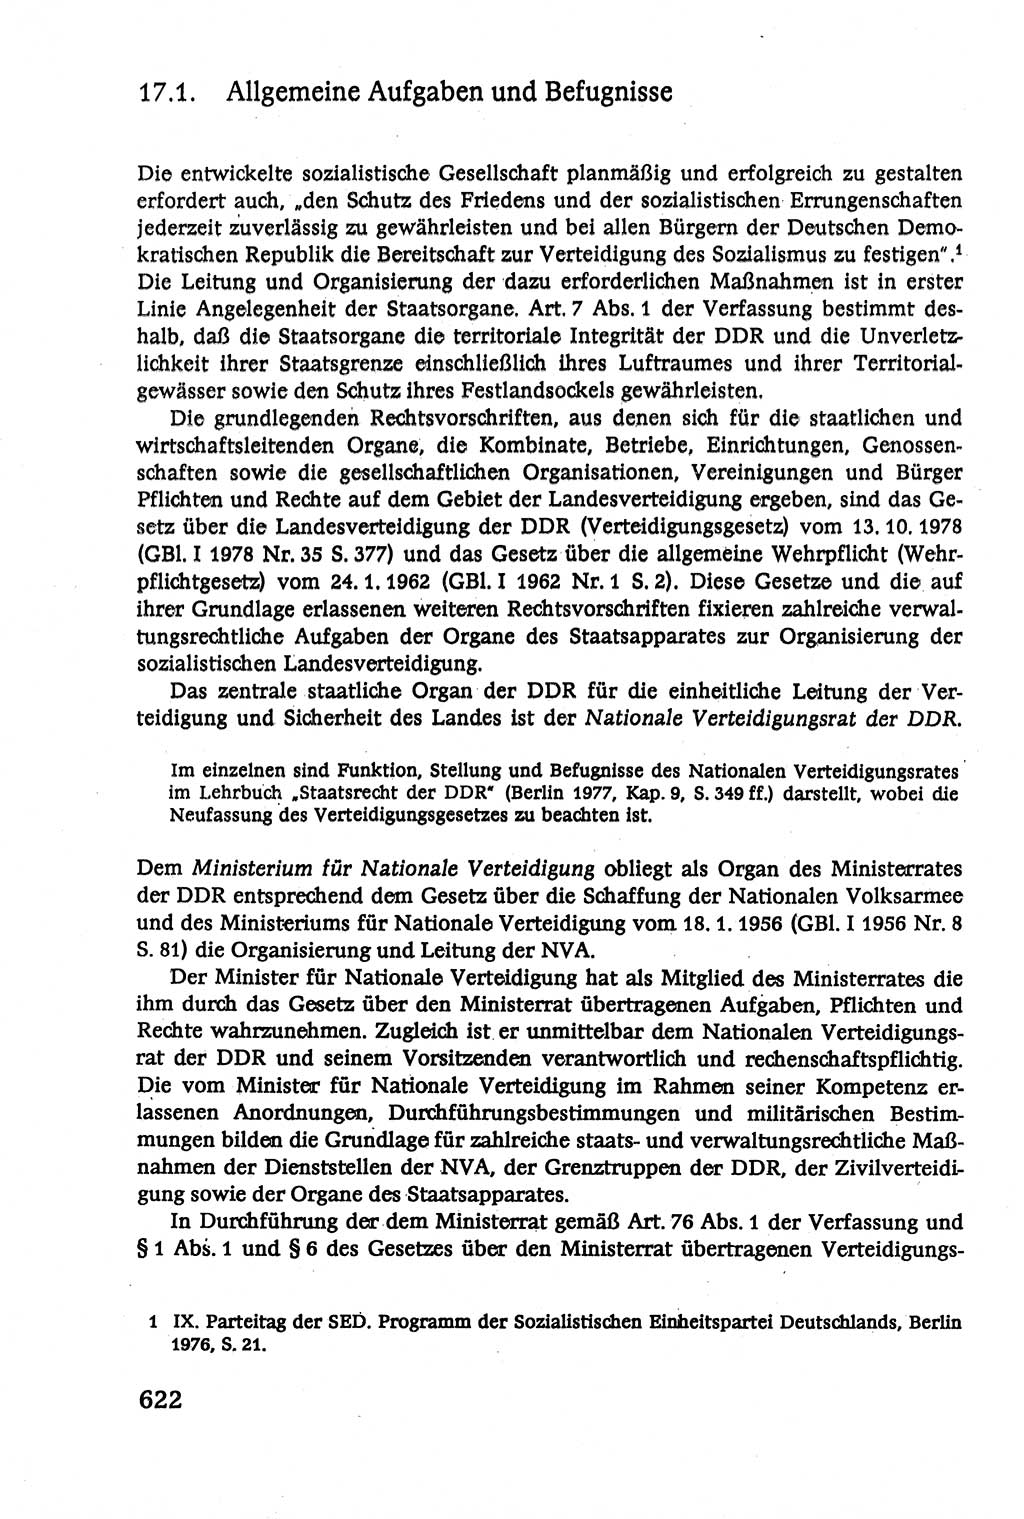 Verwaltungsrecht [Deutsche Demokratische Republik (DDR)], Lehrbuch 1979, Seite 622 (Verw.-R. DDR Lb. 1979, S. 622)